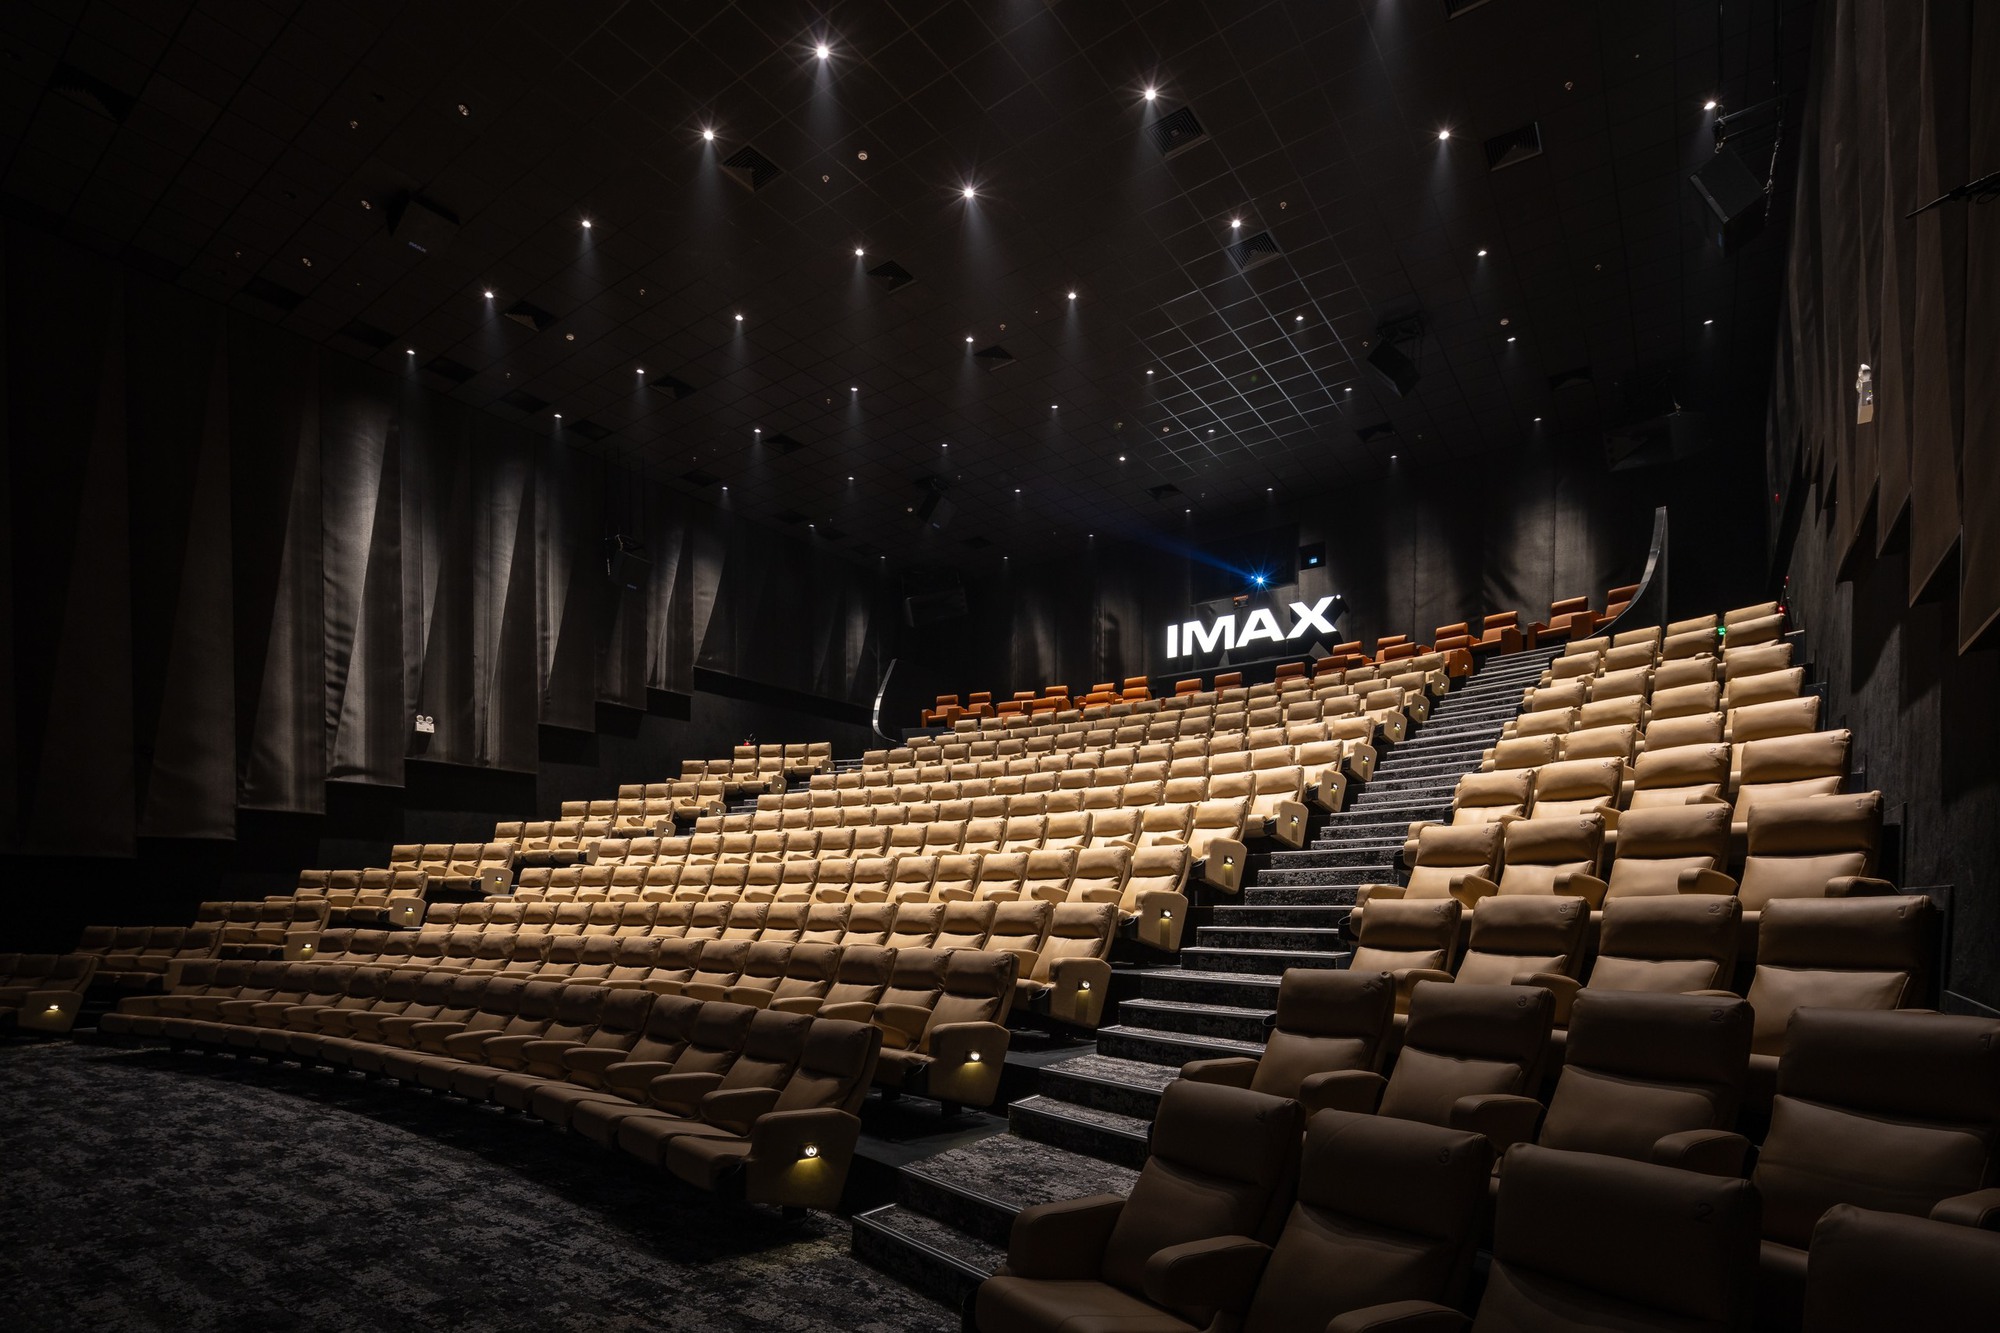 Galaxy Sala đưa người xem bước vào vương quốc Atlantis “hơn cả chân thực” qua màn hình IMAX Laser - Ảnh 4.